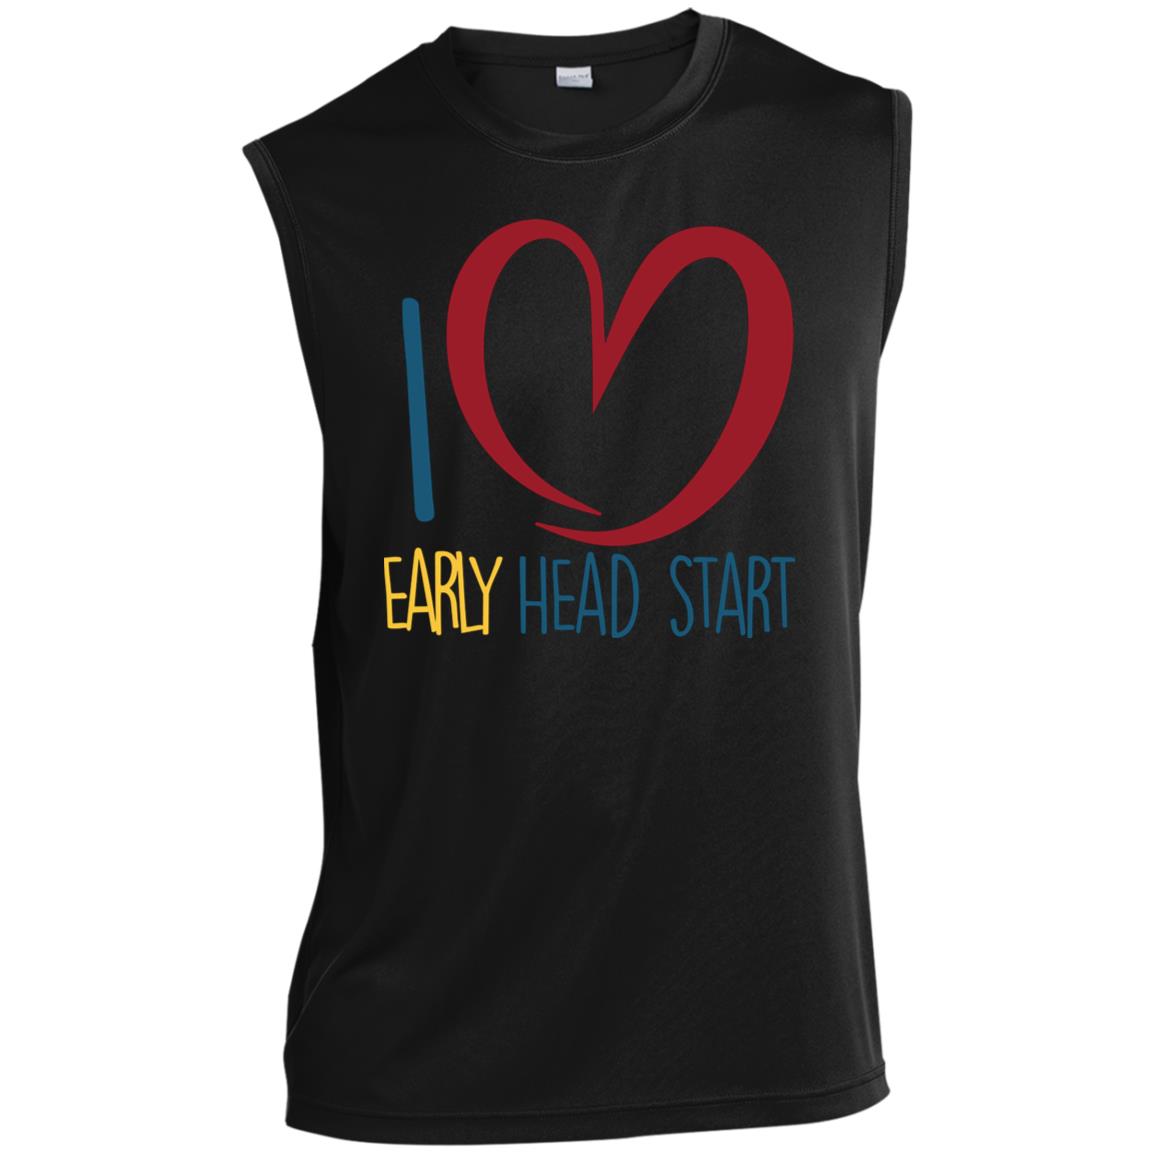 I Love Early Head Start athletic sleeveless tee